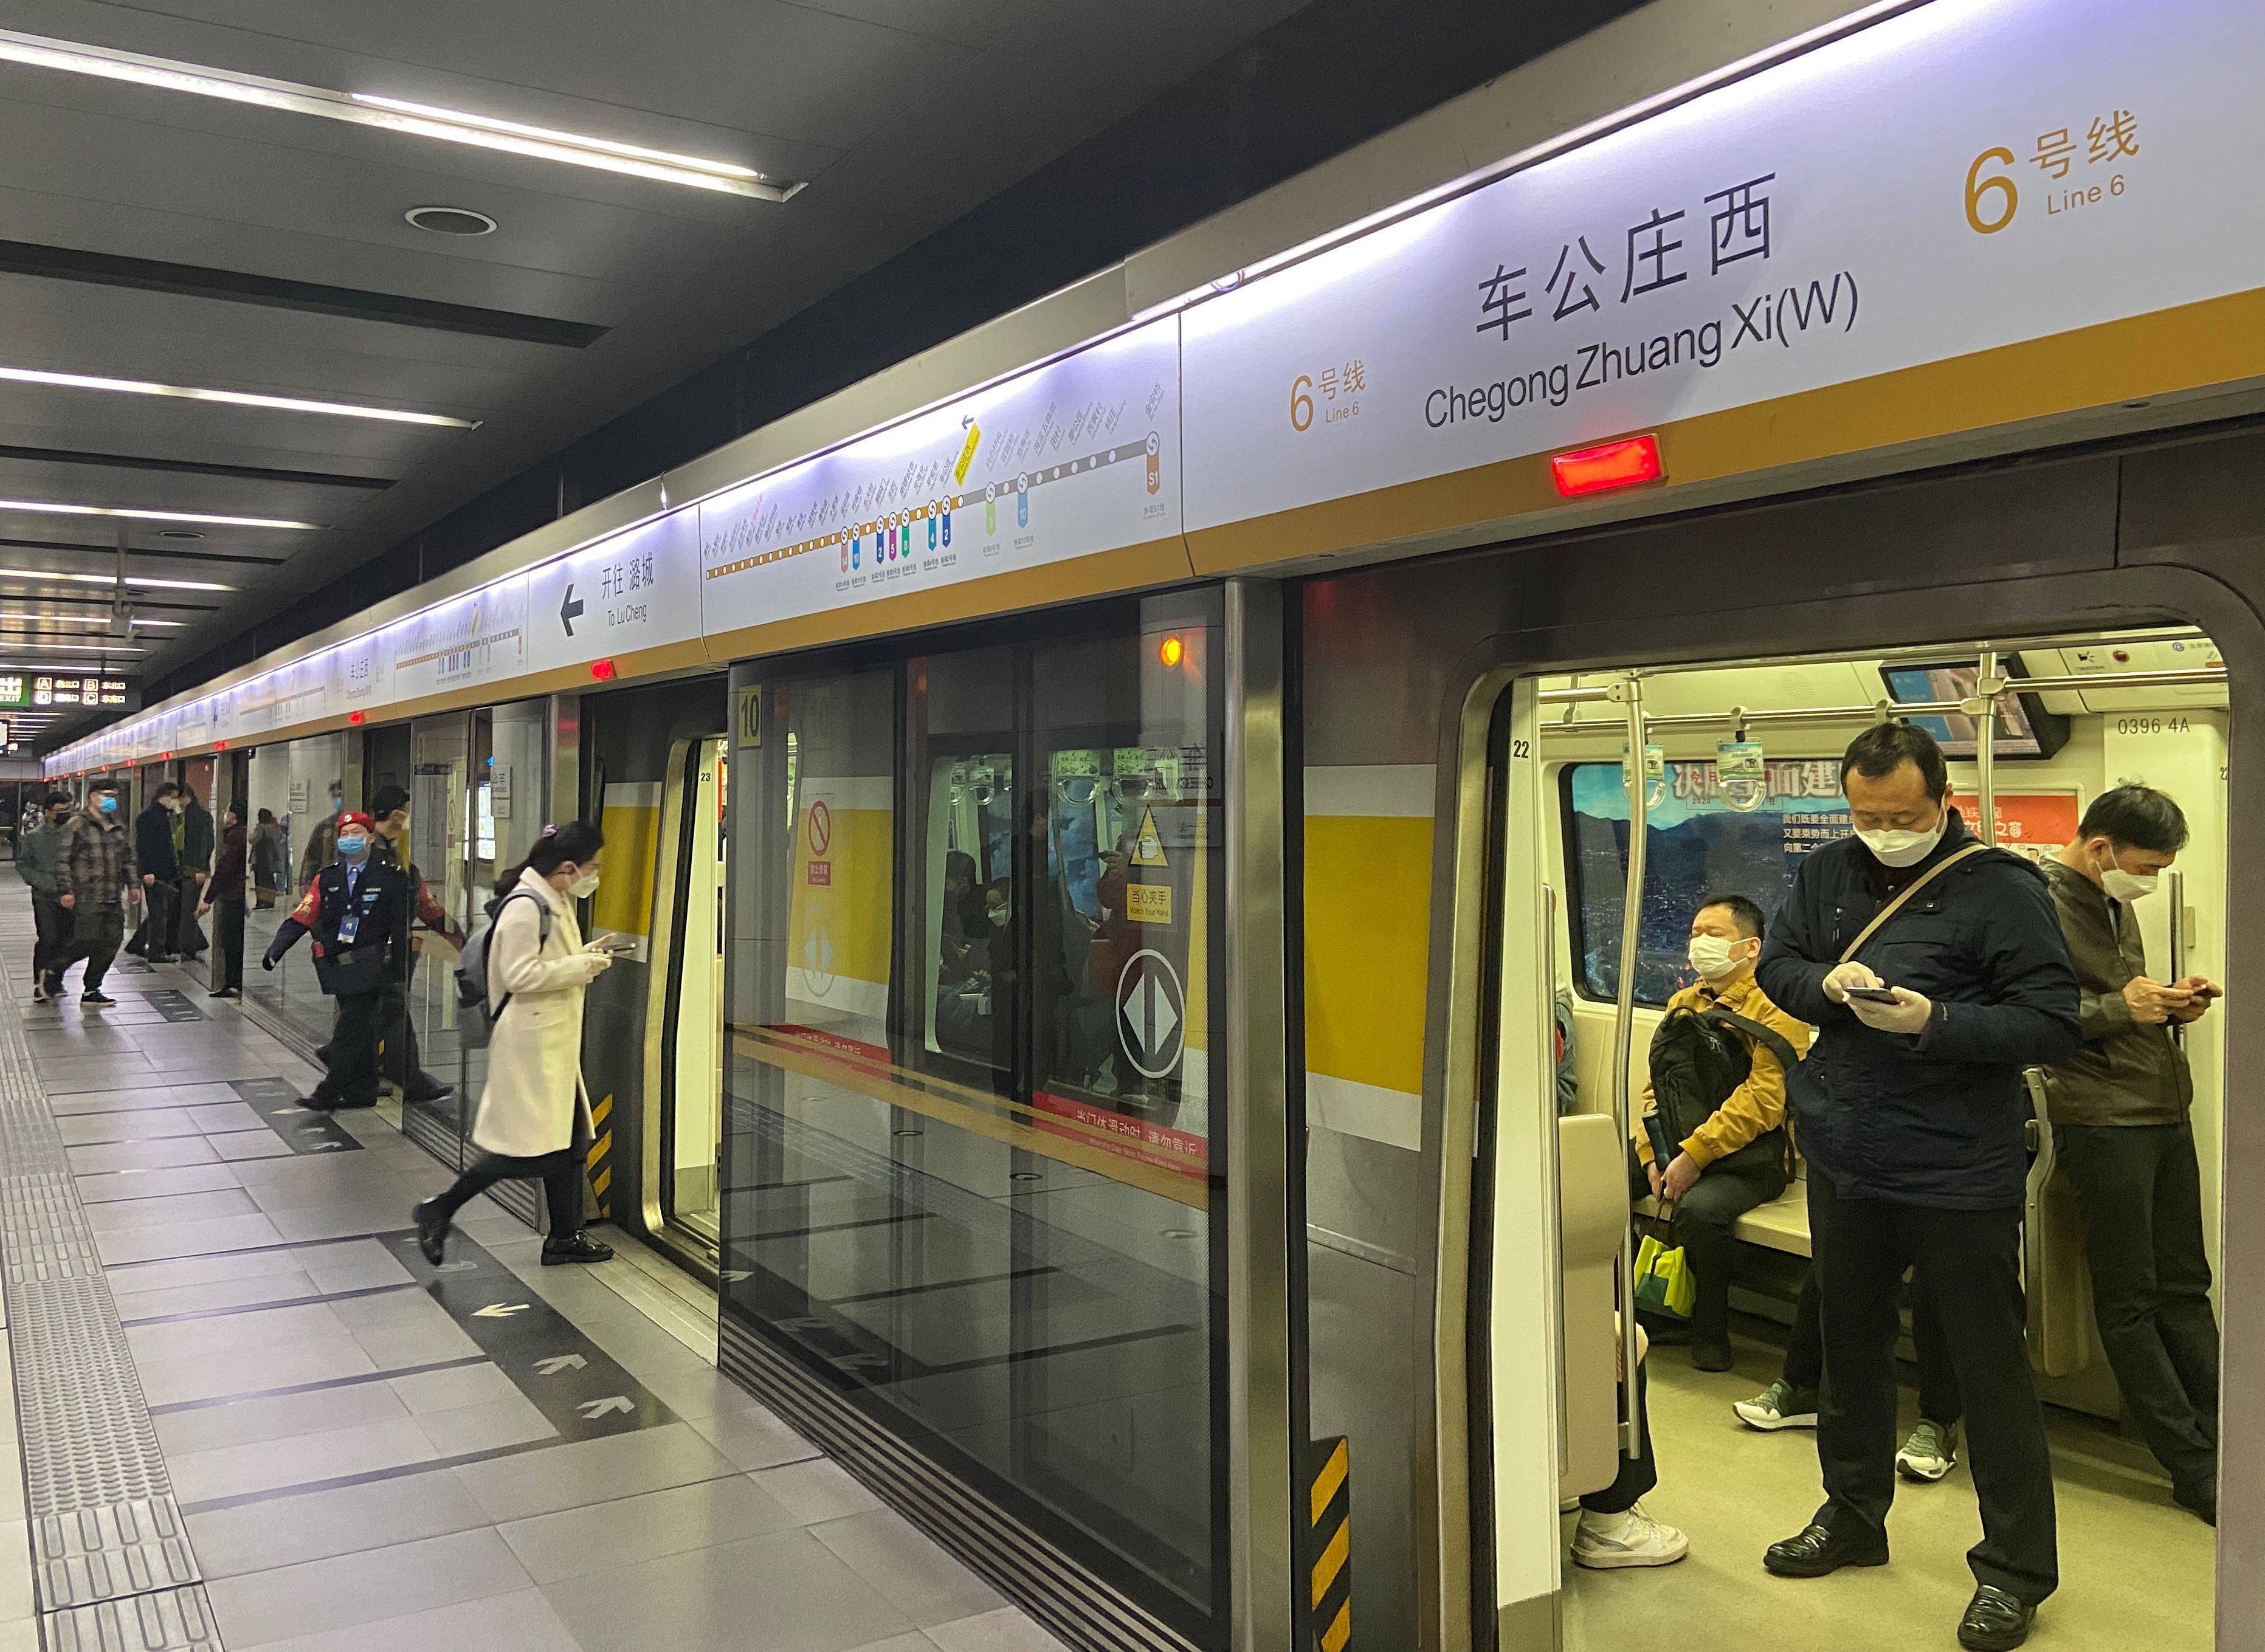 求武汉地铁5号线的完整线路规划图具体途径站点名称（武汉地铁站图画）